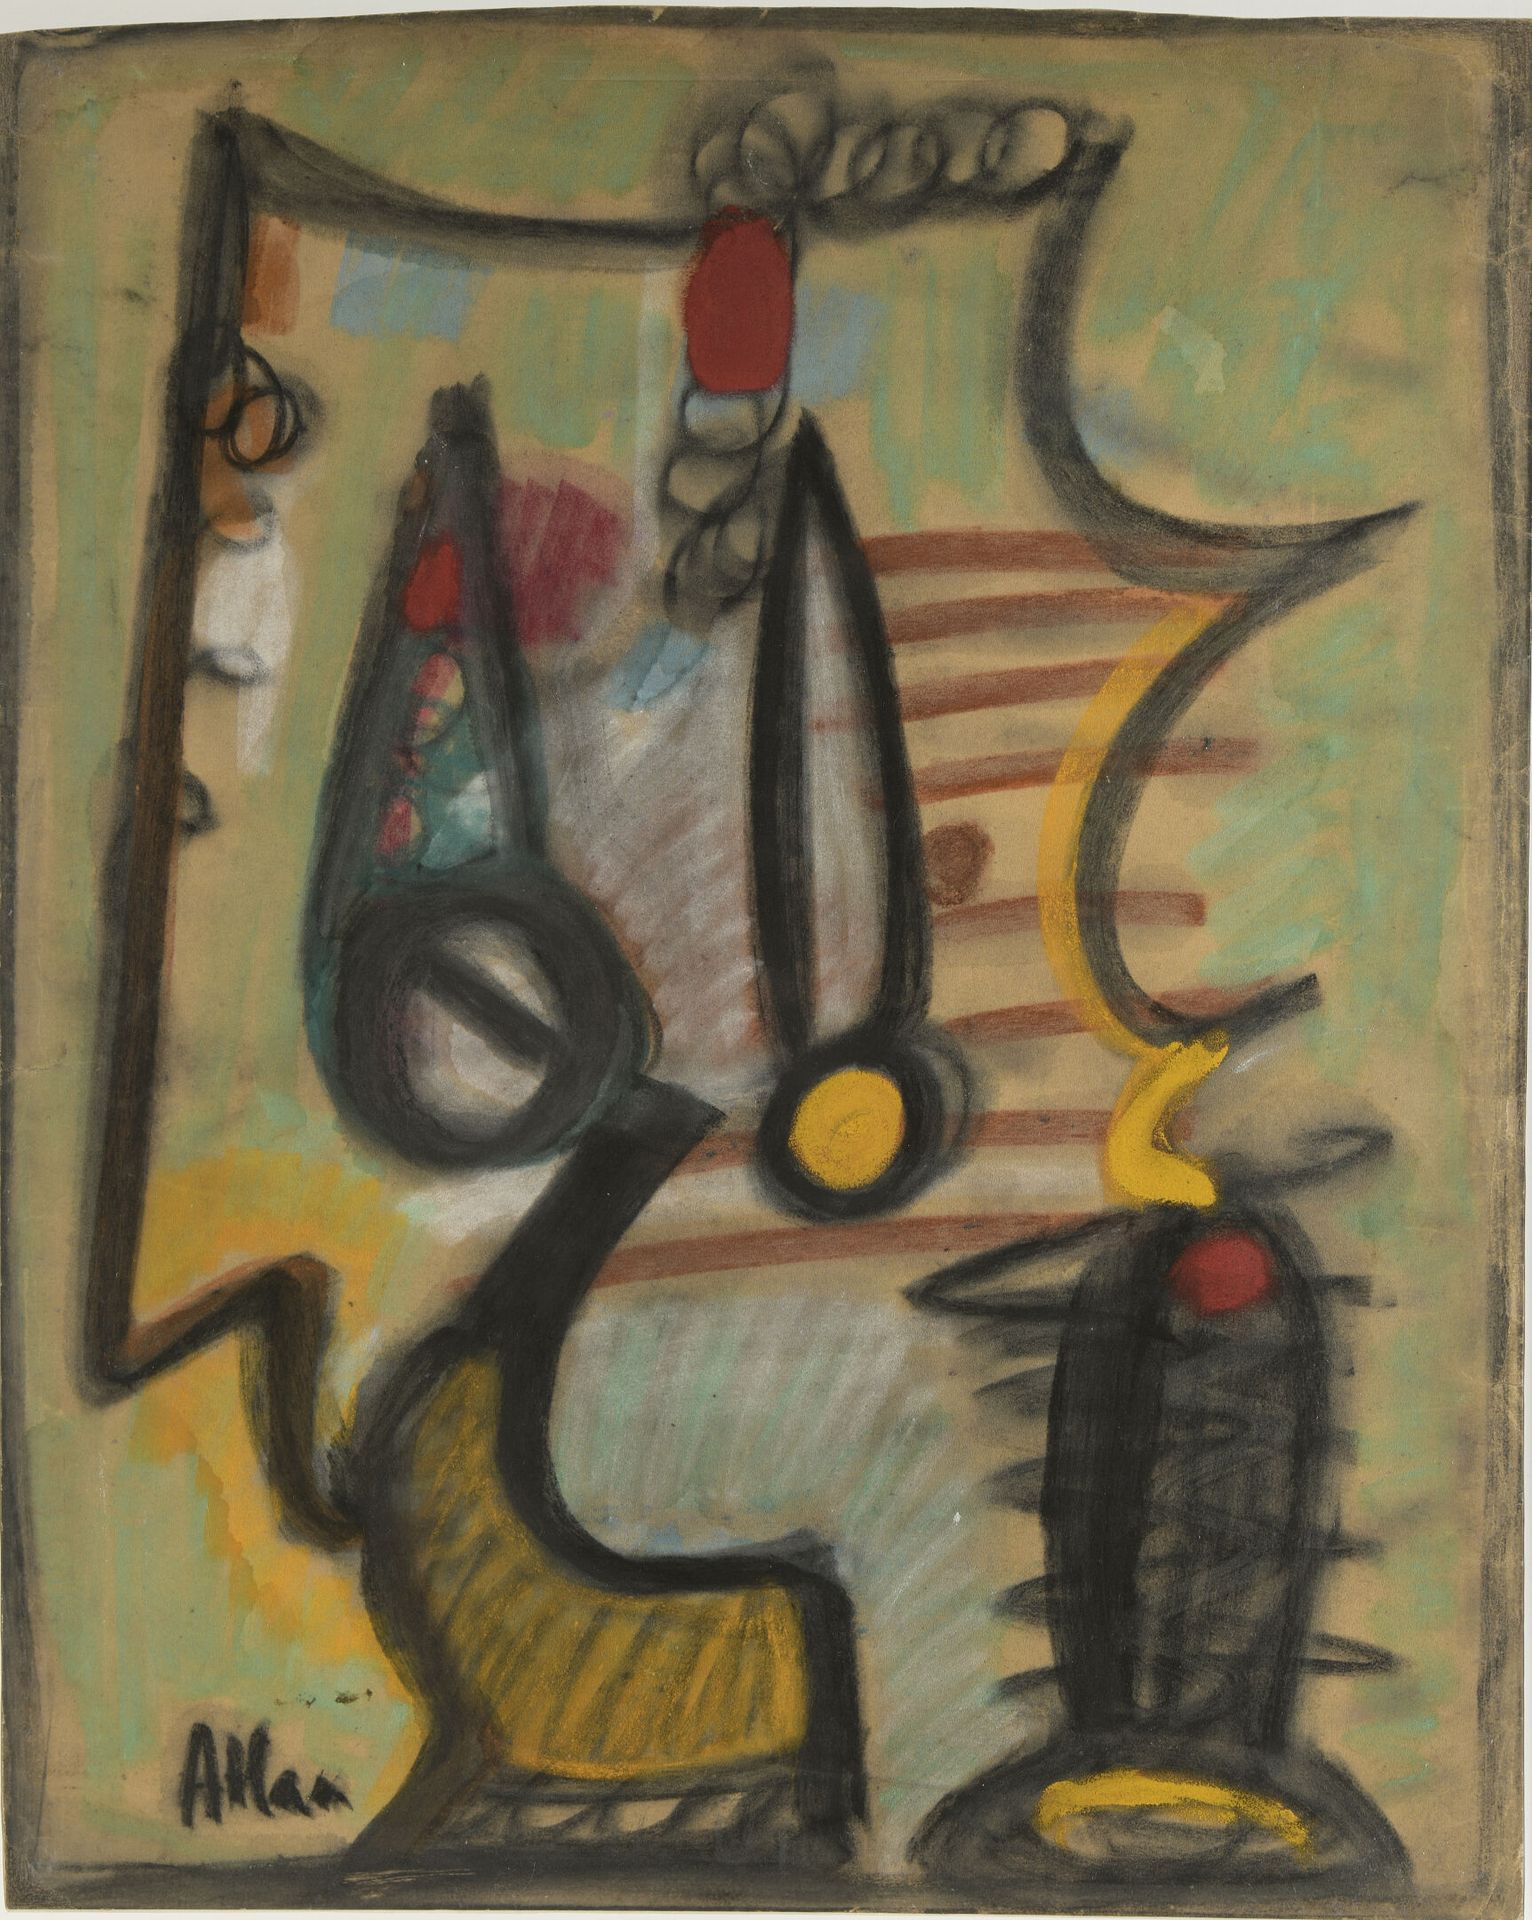 Null 让-米歇尔-阿特兰(1913-1960)

无题》，1947年

粉彩画，左下角有签名

H.64.5厘米 - 宽约52厘米（上边略微有不规则的切割）&hellip;